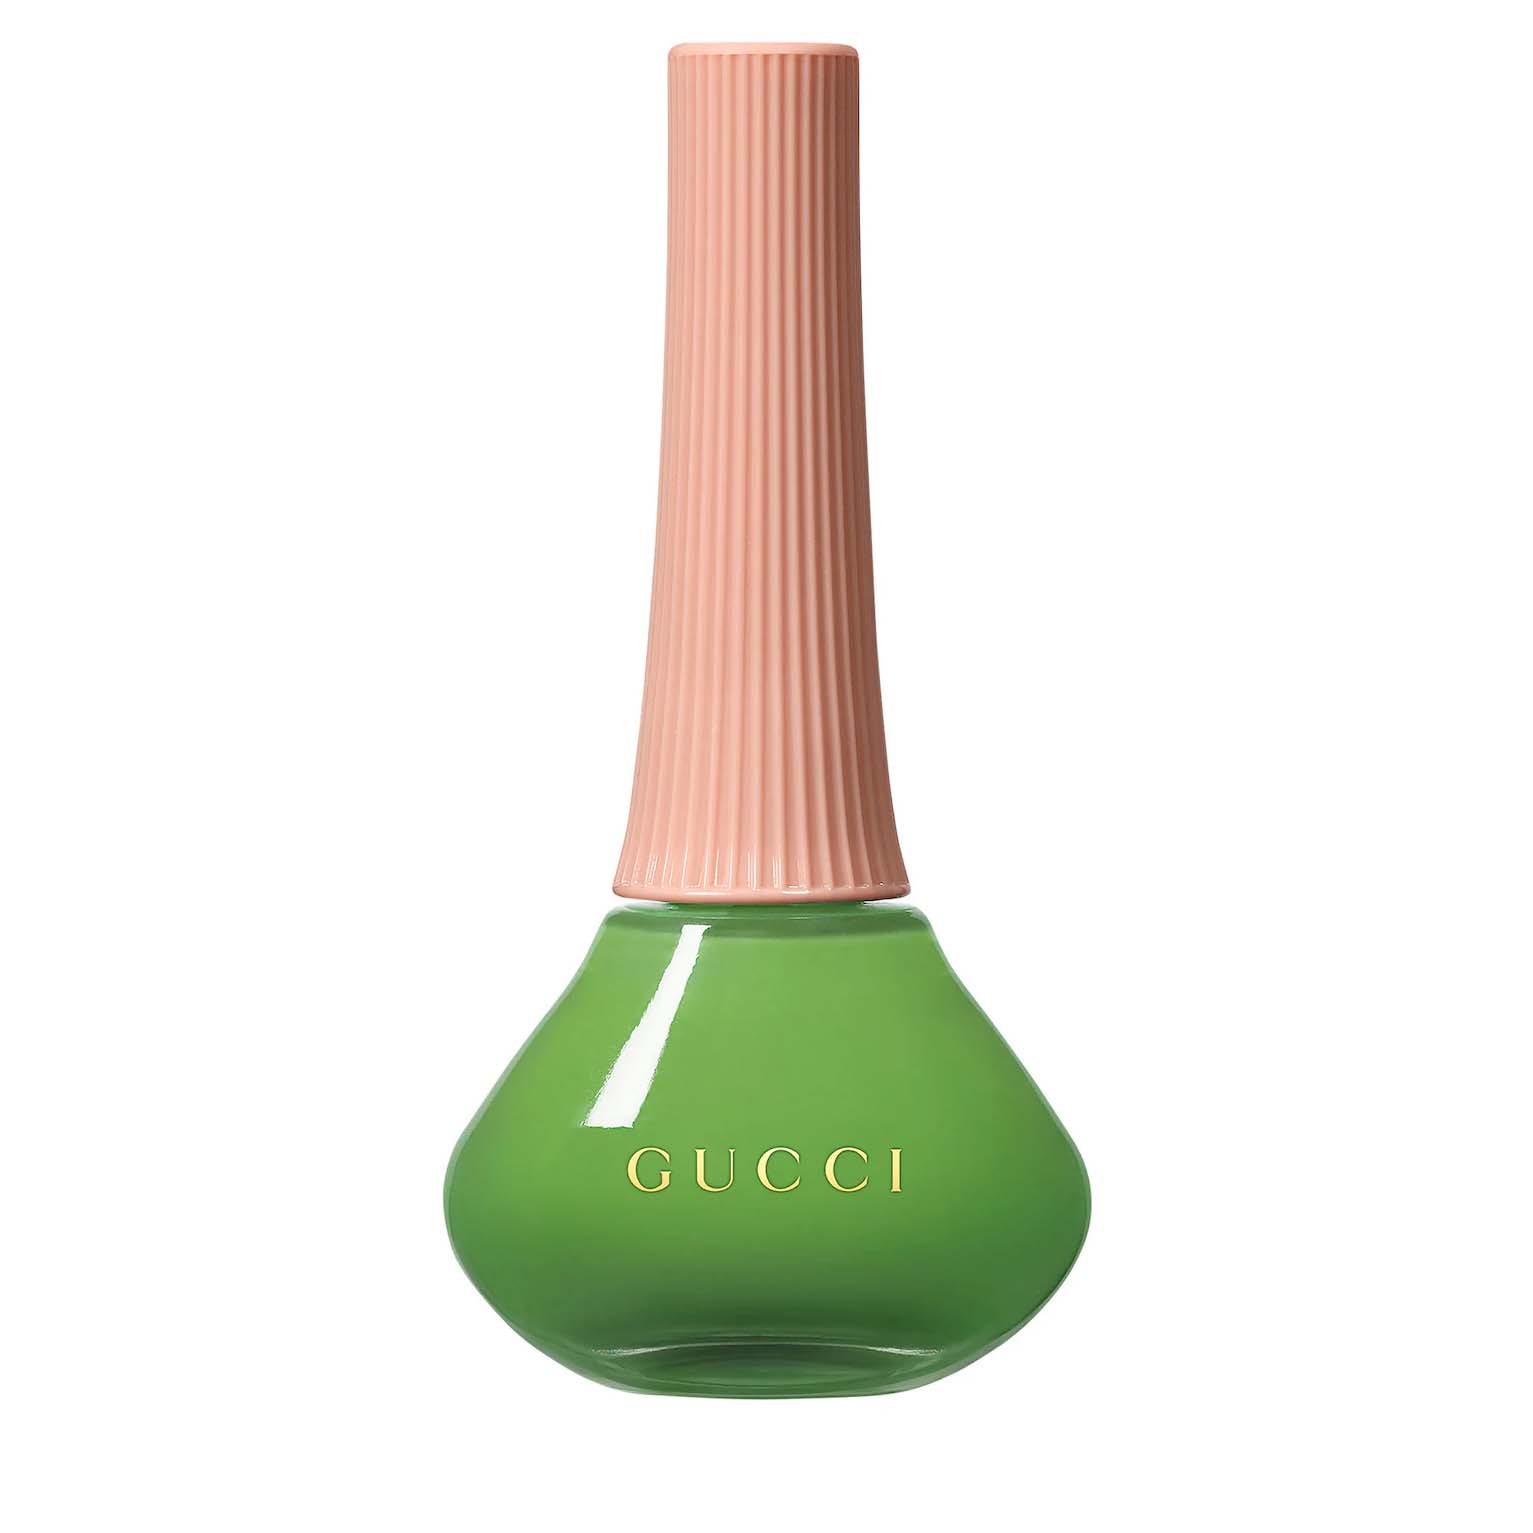 Gucci Glossy Nail Polish in bright green